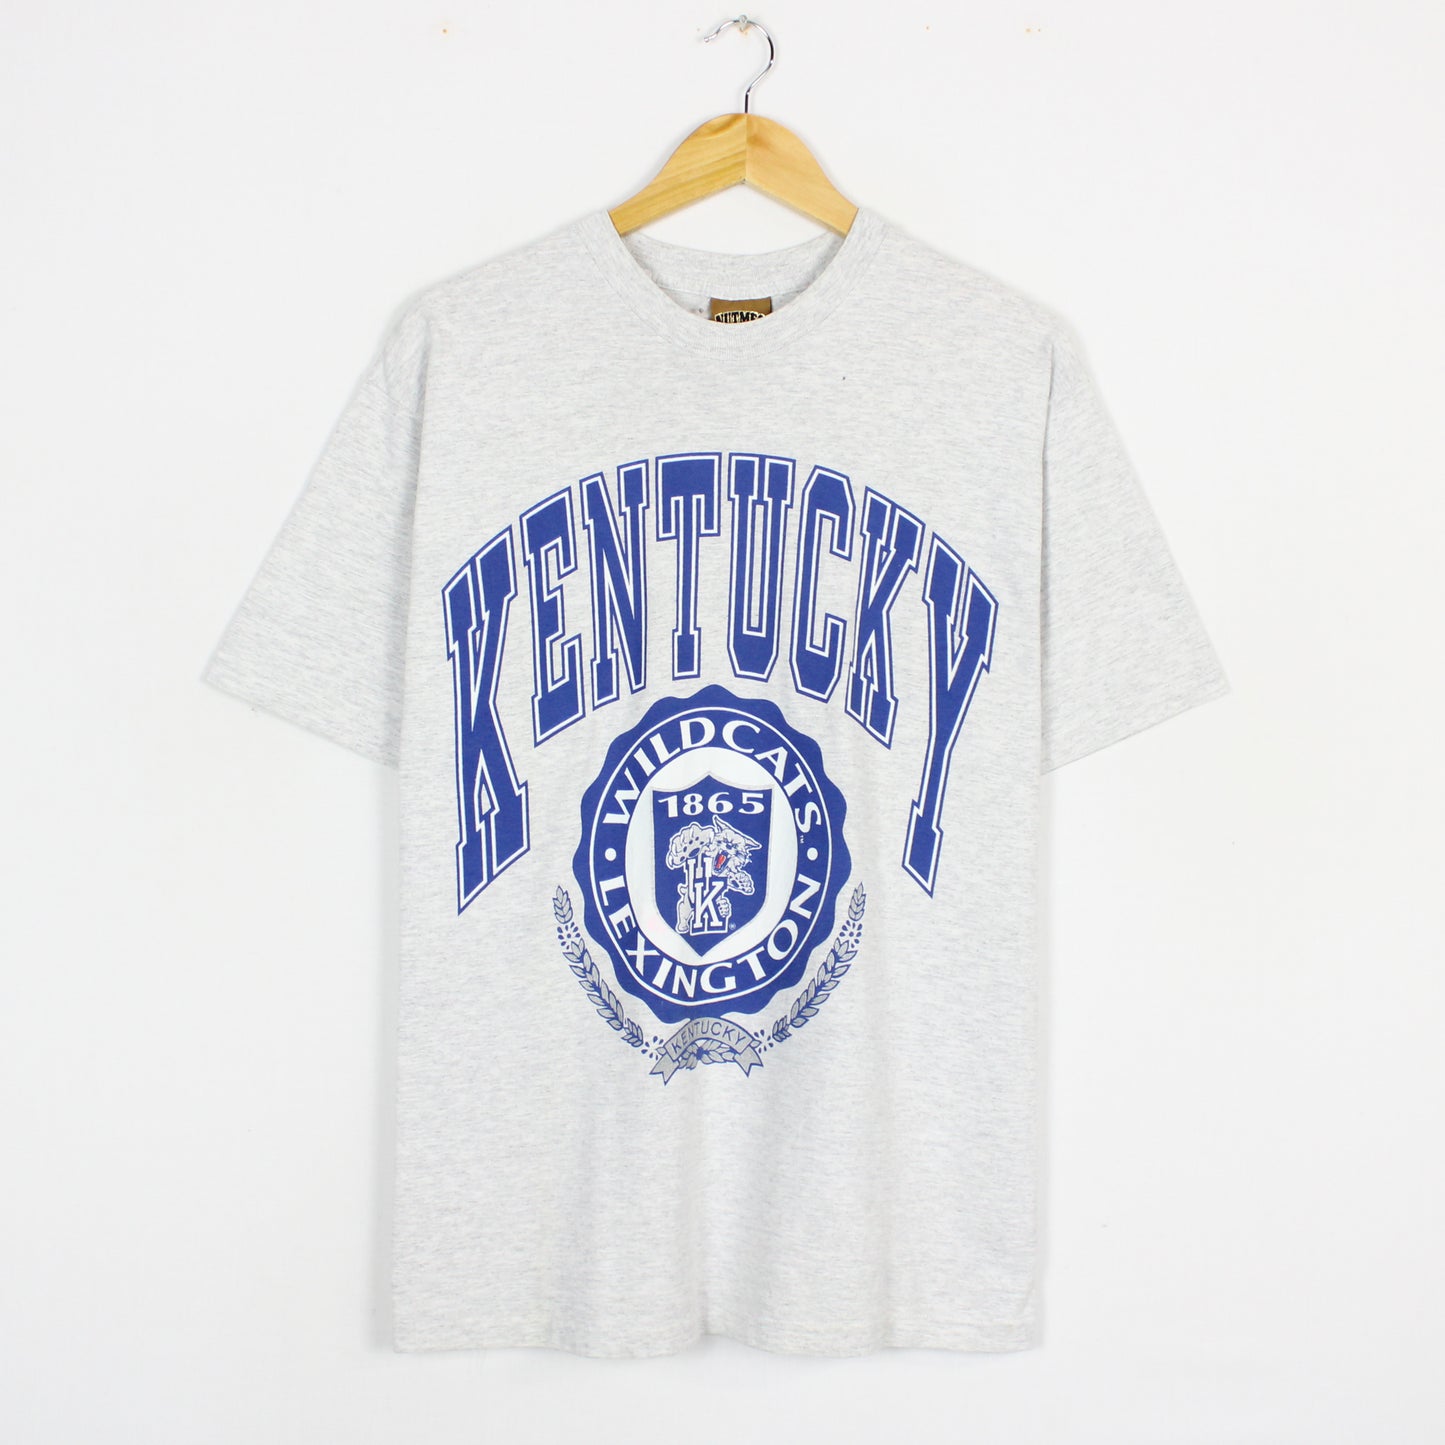 Vintage Kentucky Wildcats NCAA Tee - L